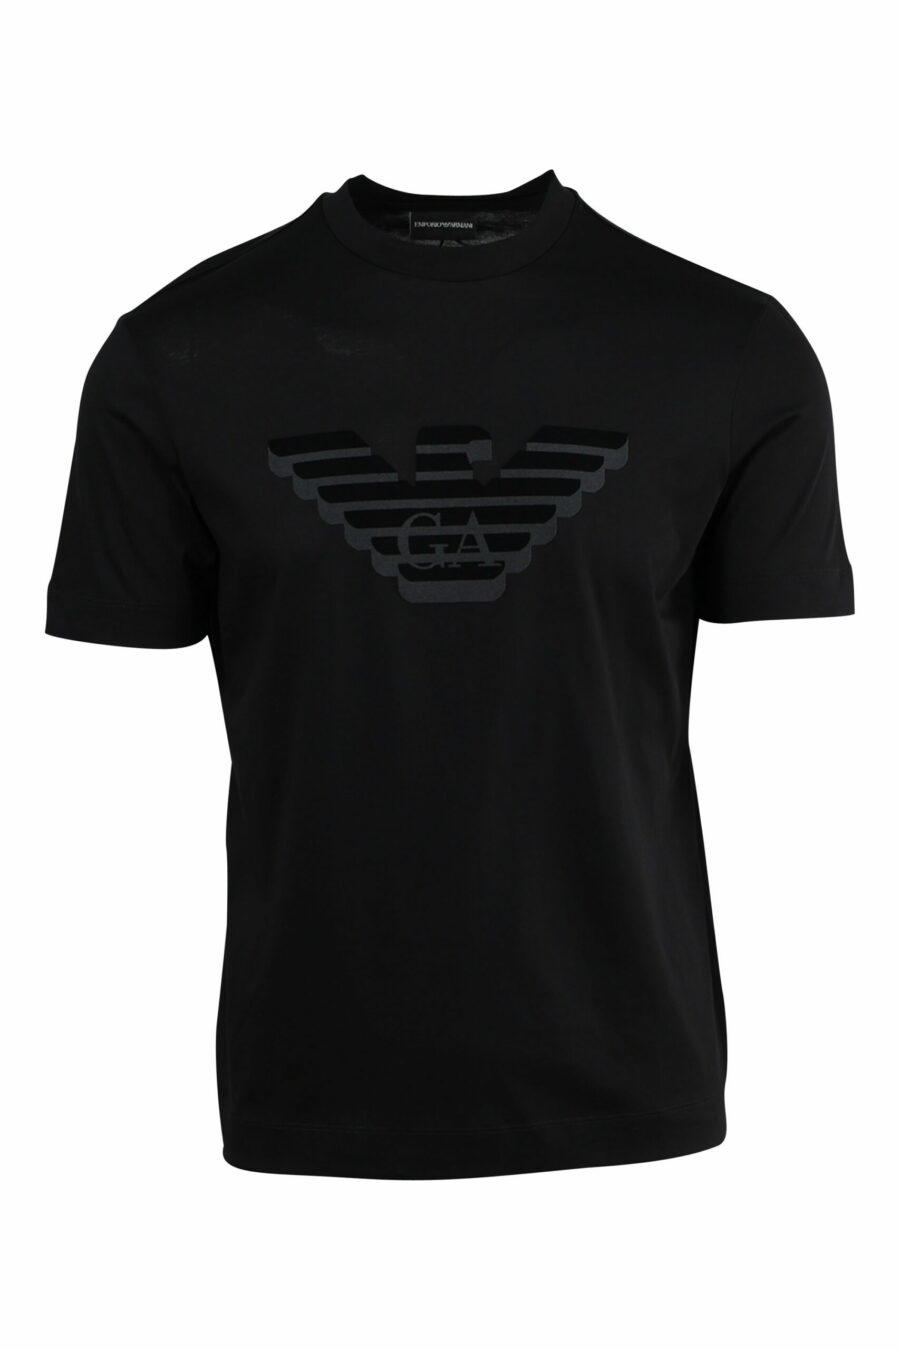 T-shirt preta com maxilogo de águia em relevo - 8057970433729 scaled